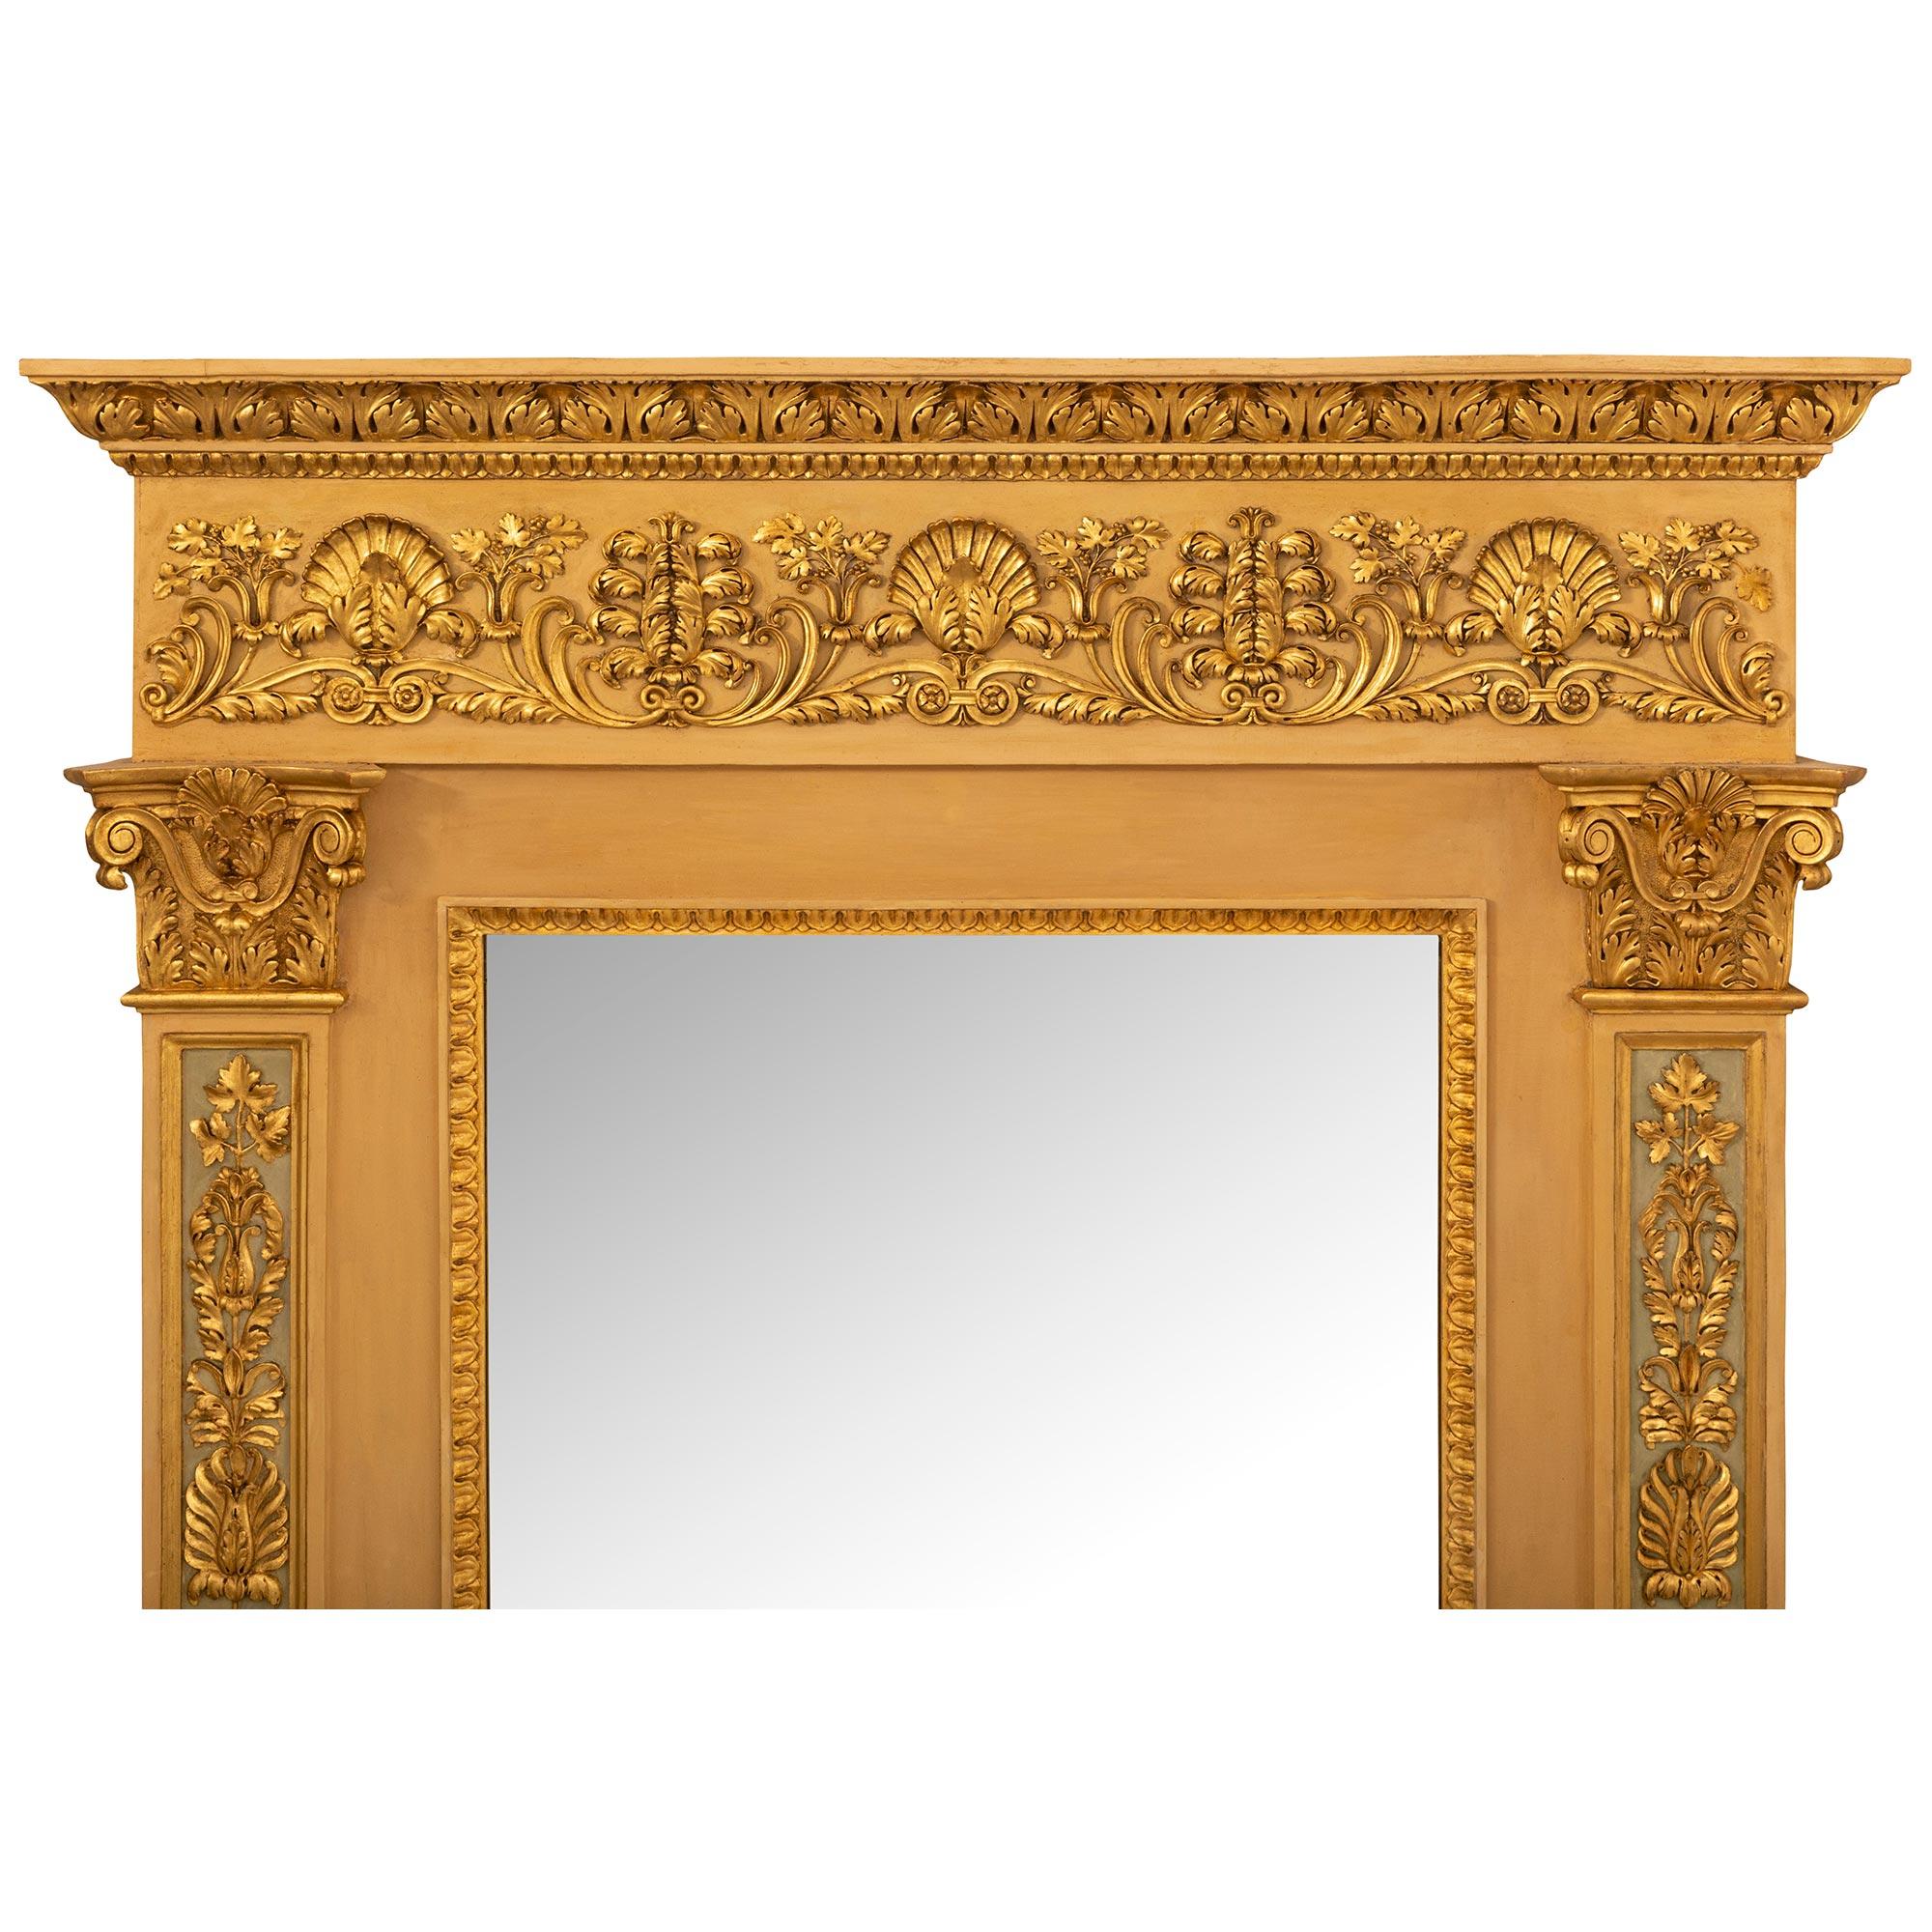 Remarquable console néoclassique italienne du XIXe siècle en bois doré patiné et en faux marbre peint, assortie d'un miroir. La console autoportante est surélevée par un étage inférieur en faux marbre peint, merveilleusement exécuté, avec une façade